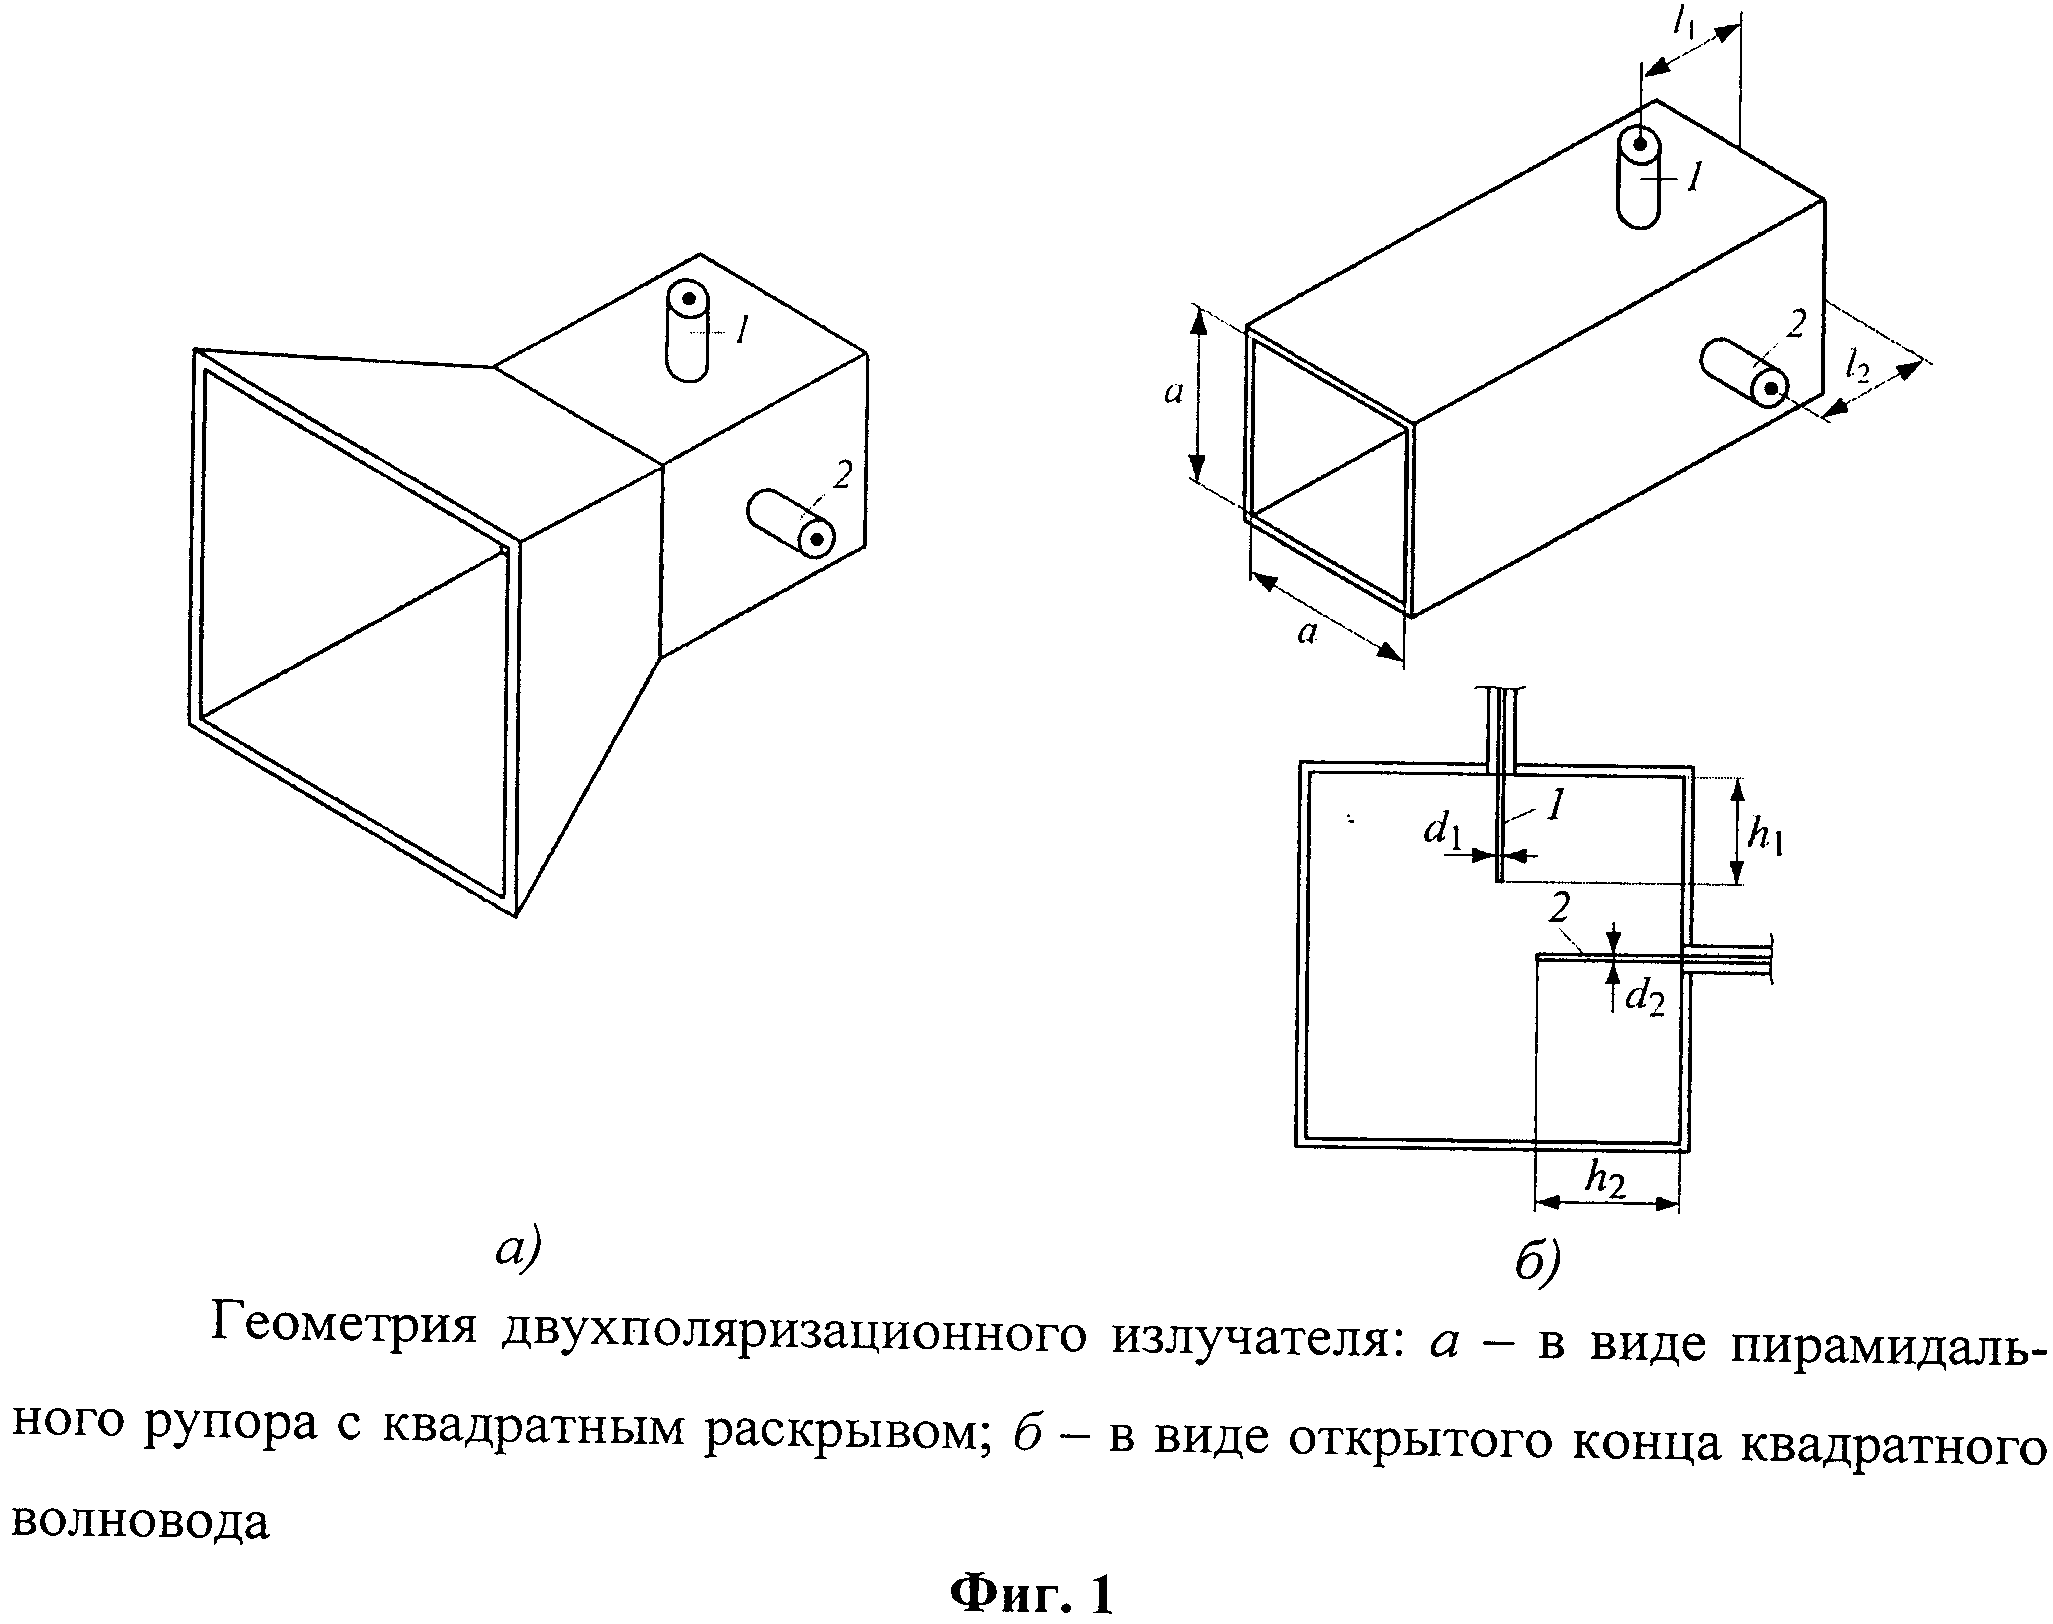 Малогабаритный двухполяризационный волноводный излучатель фазированной антенной решетки с высокой развязкой между каналами